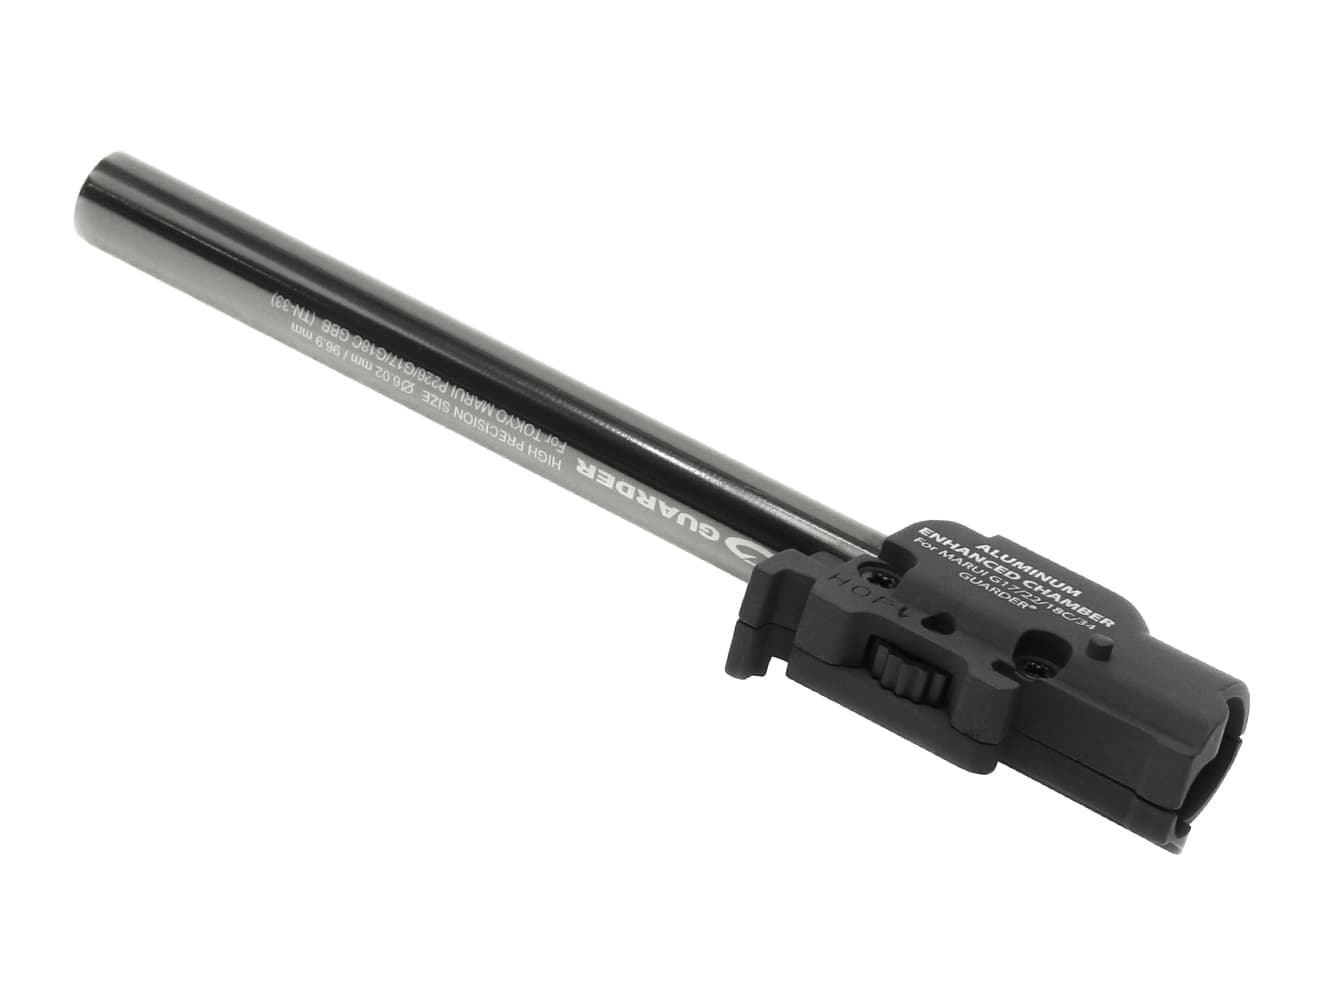 MP9-44　GUARDER 強化ホップアップチャンバー w/ 6.02 TNバレル マルイ GBB M&P9用